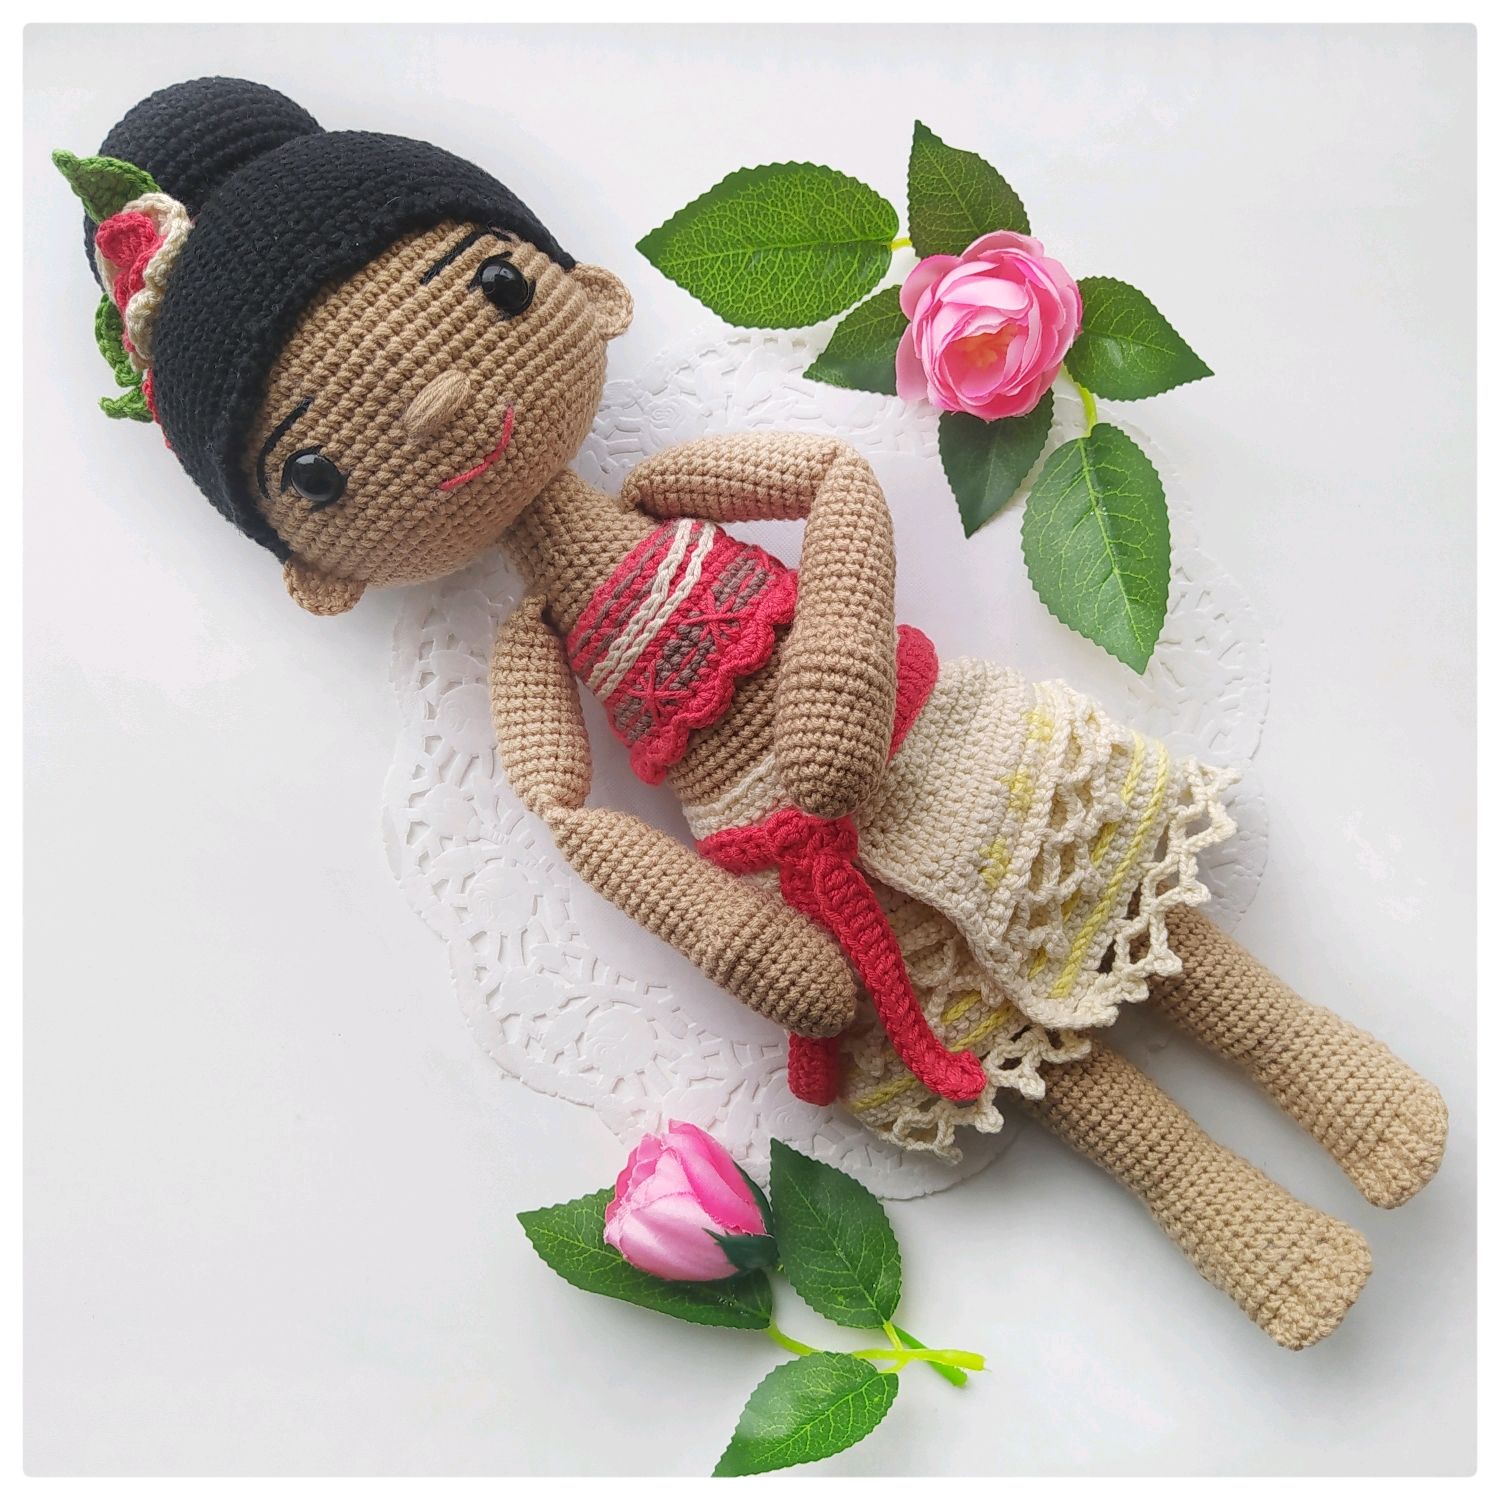 Купить Куклу Моану В Интернет Магазине